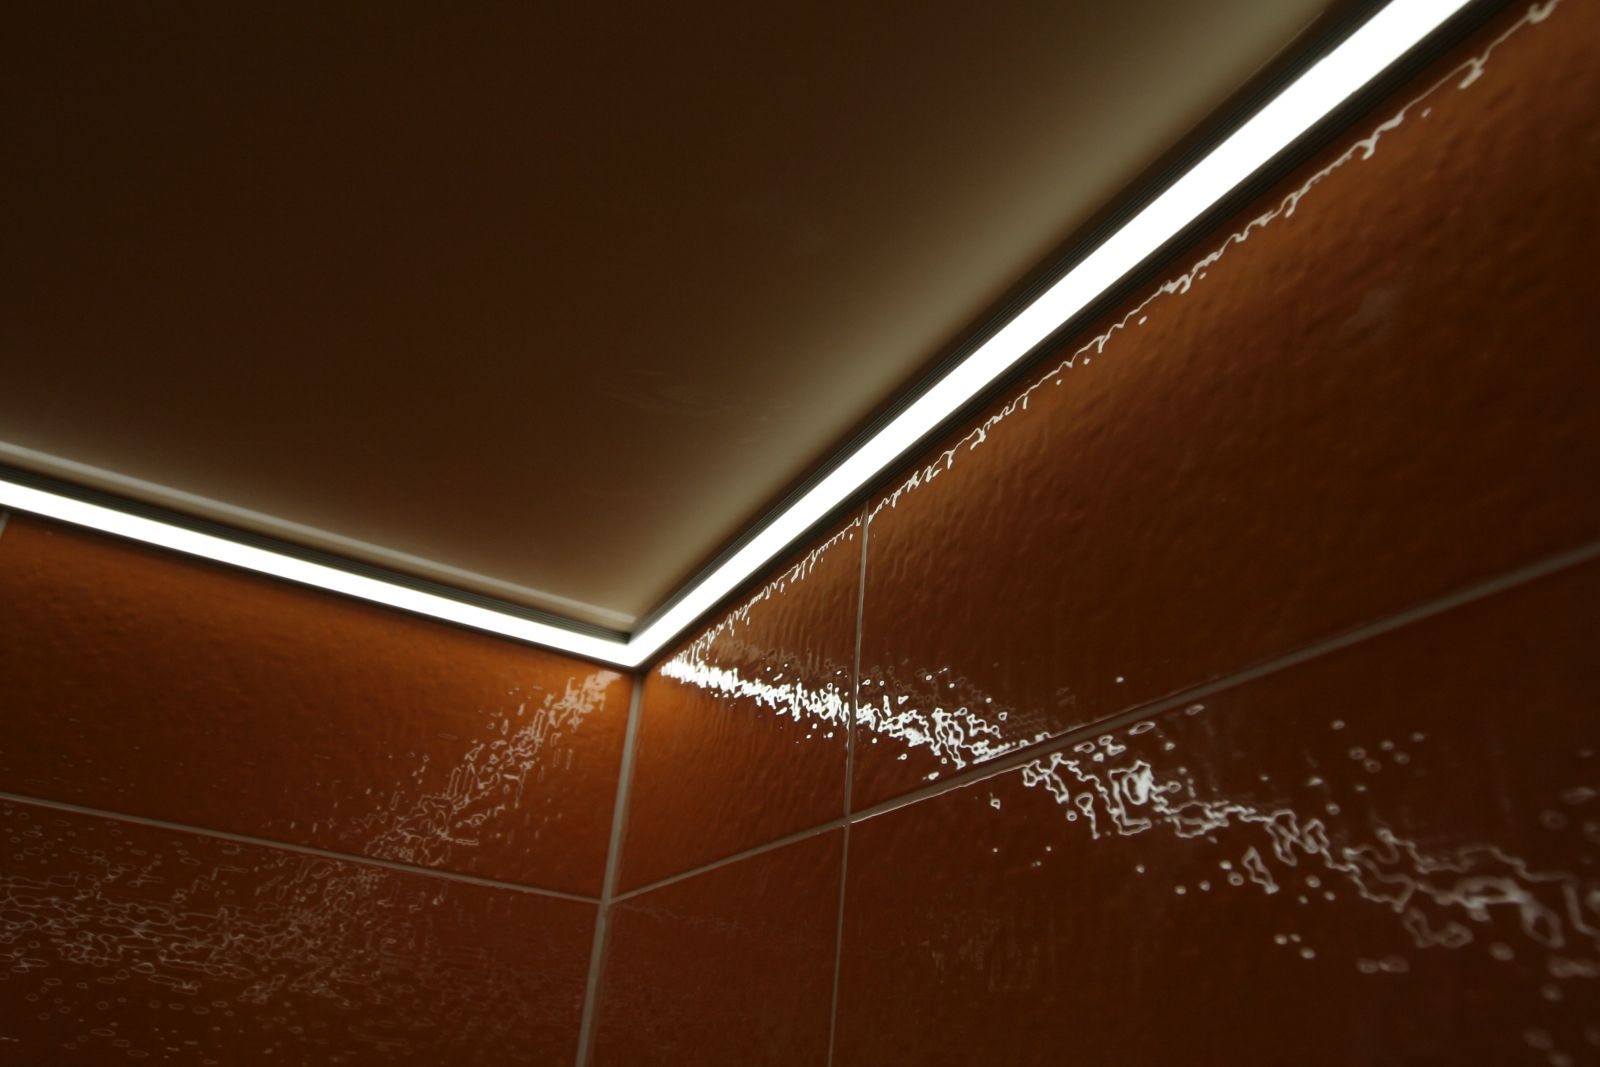 светодиодная лента для натяжного потолка